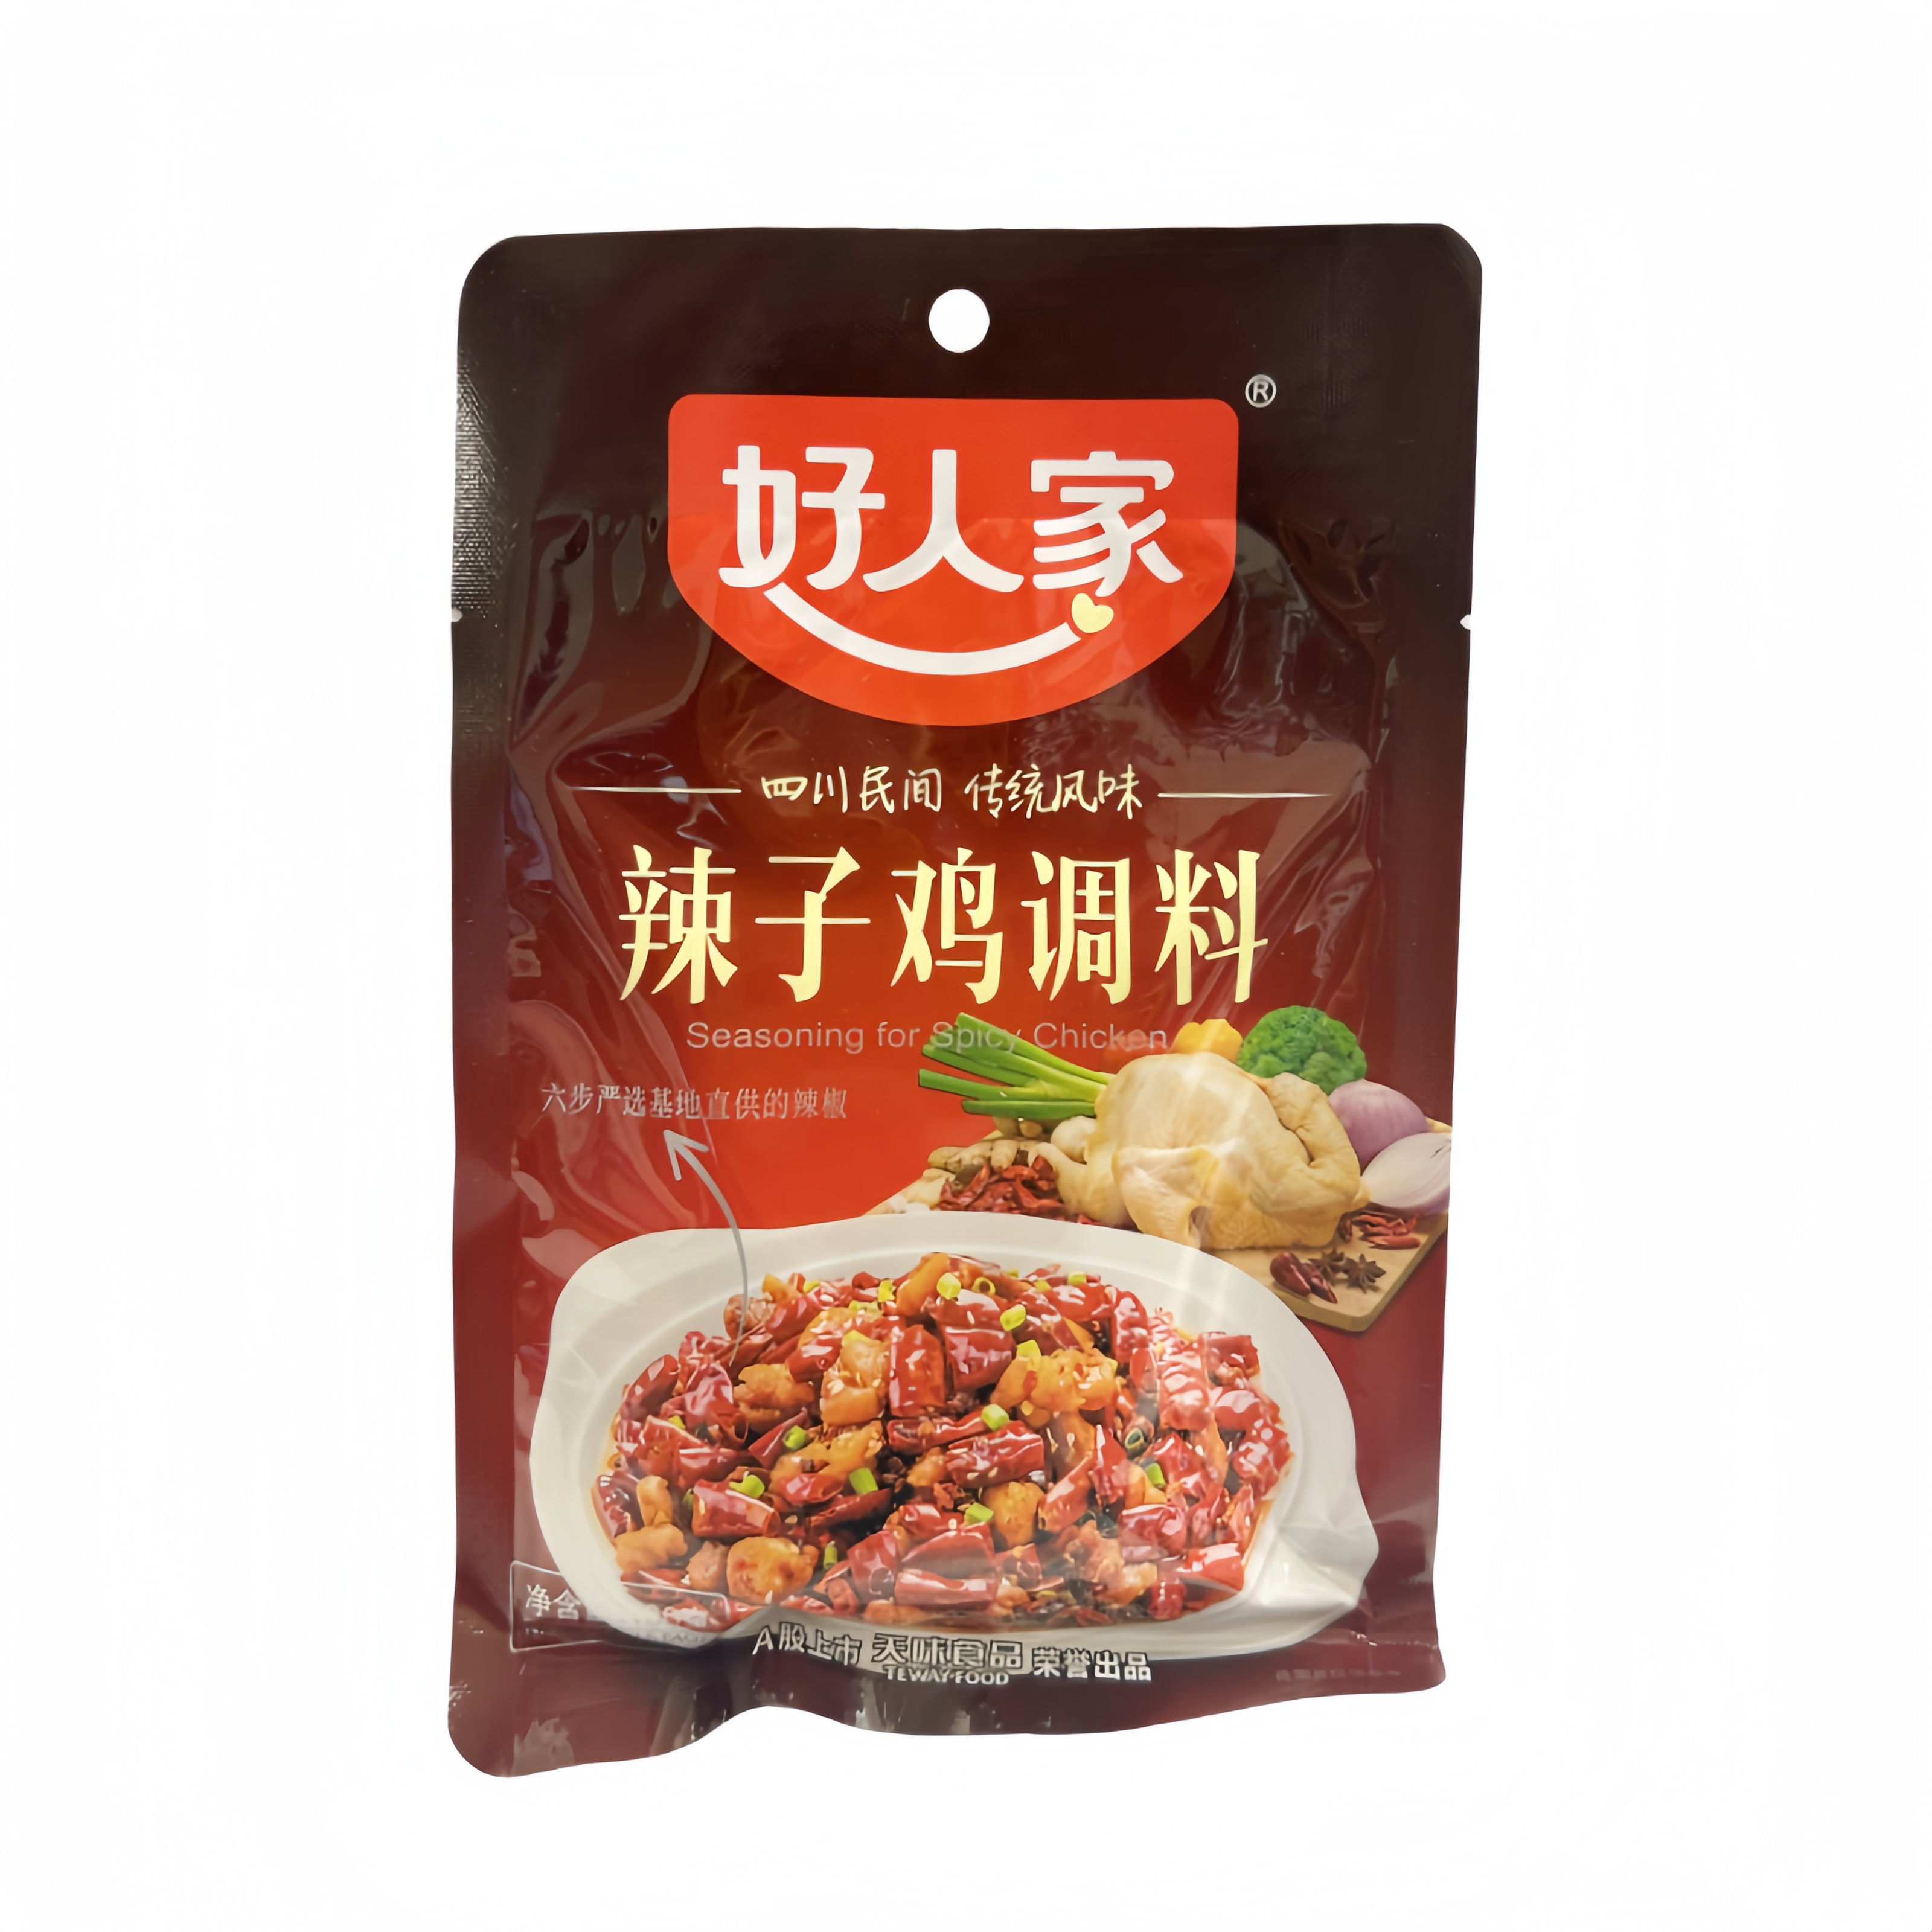 Seasoning Stark / Chili Chicken 160g Hao Ren Jia China